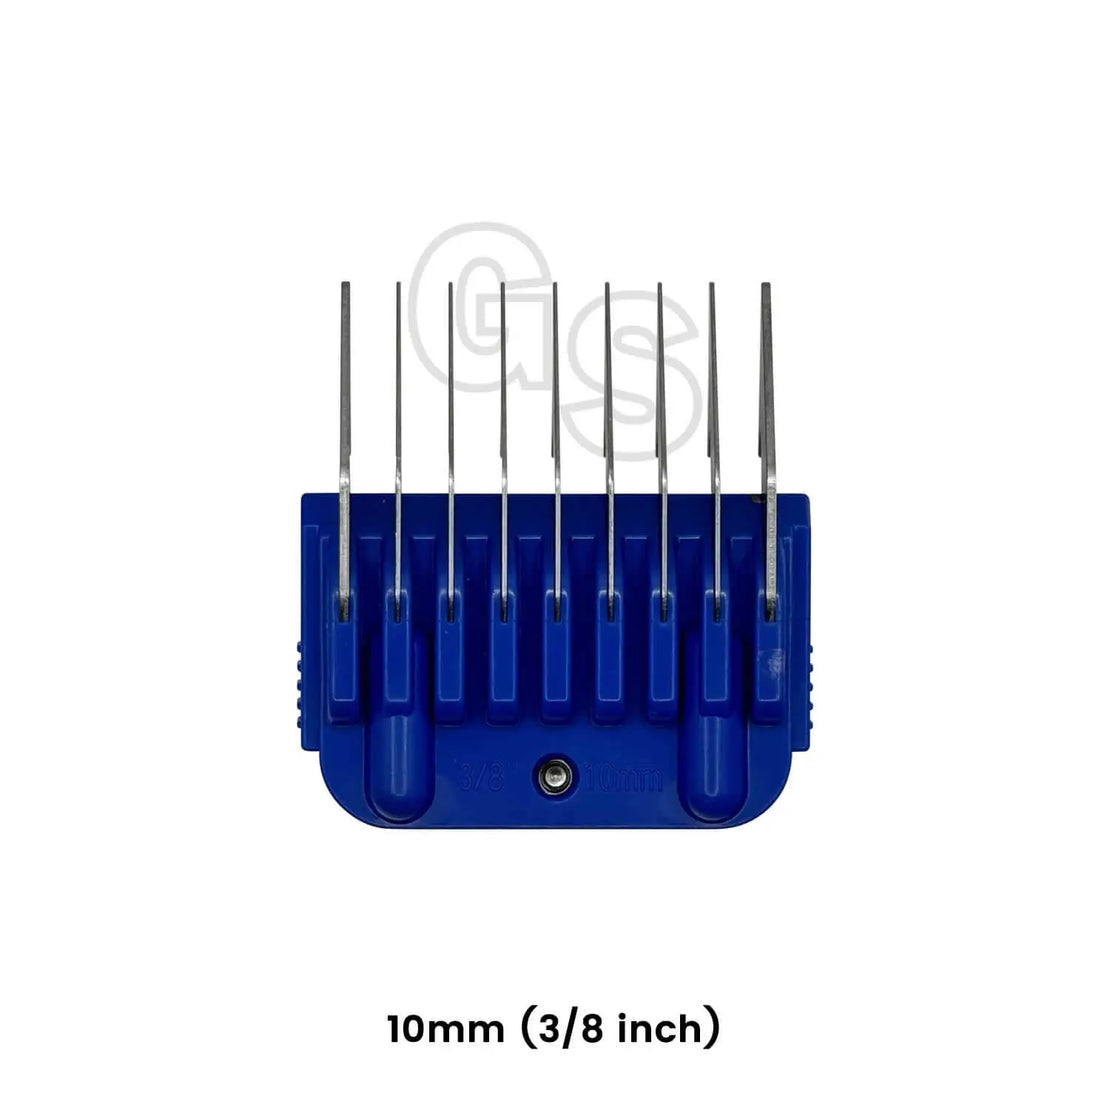 Nine Piece Comb Attachment Set (A5 Blade Compatible)